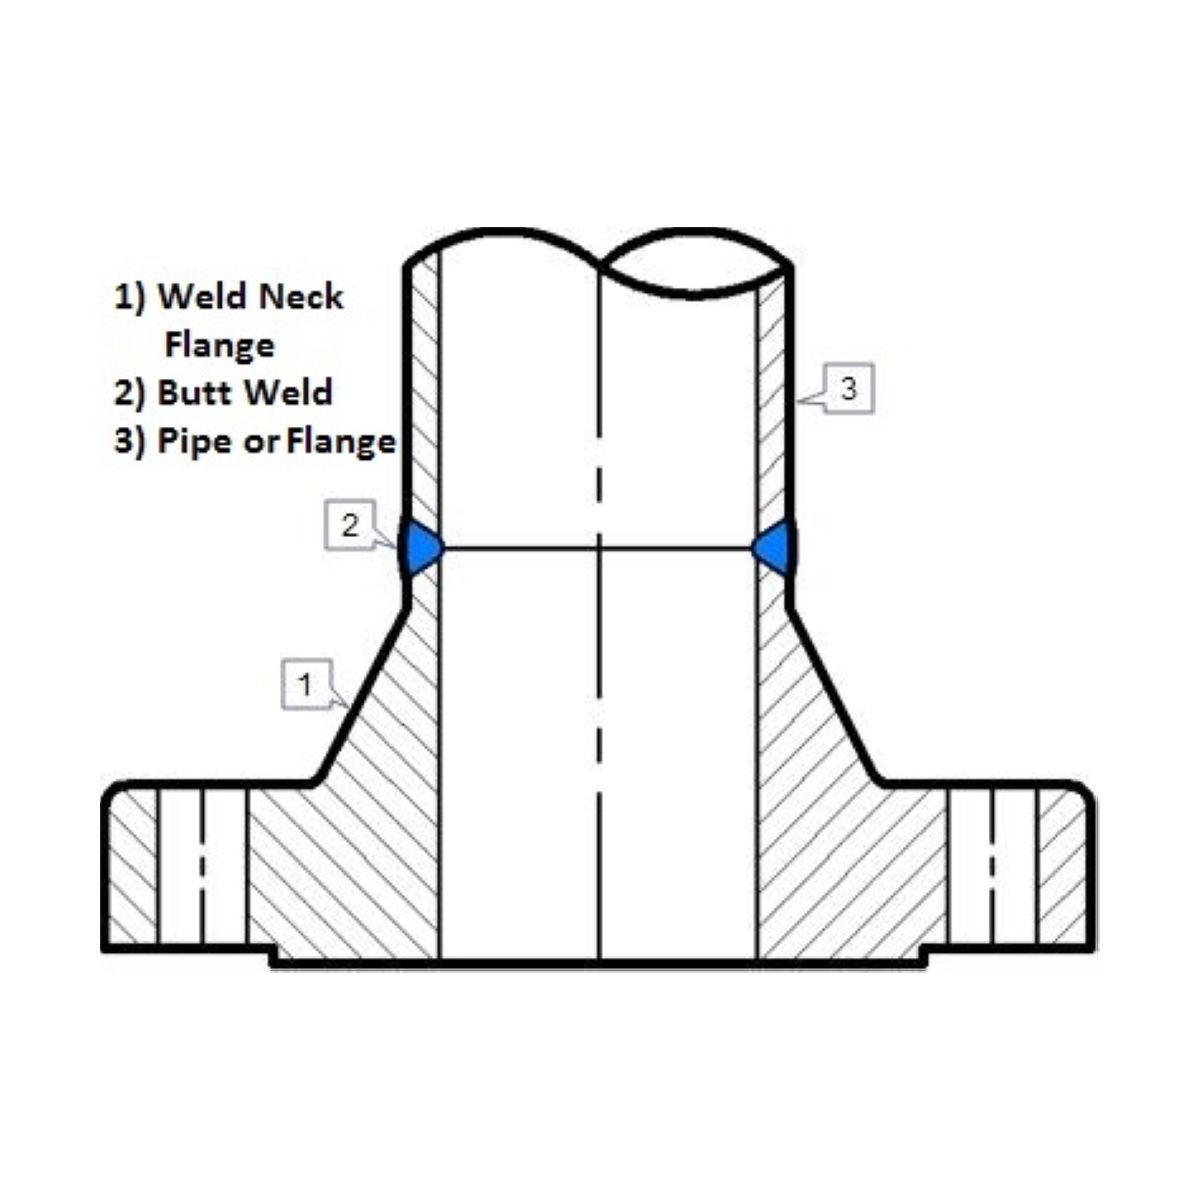 Weld Neck Flange | LF2 | Diagram